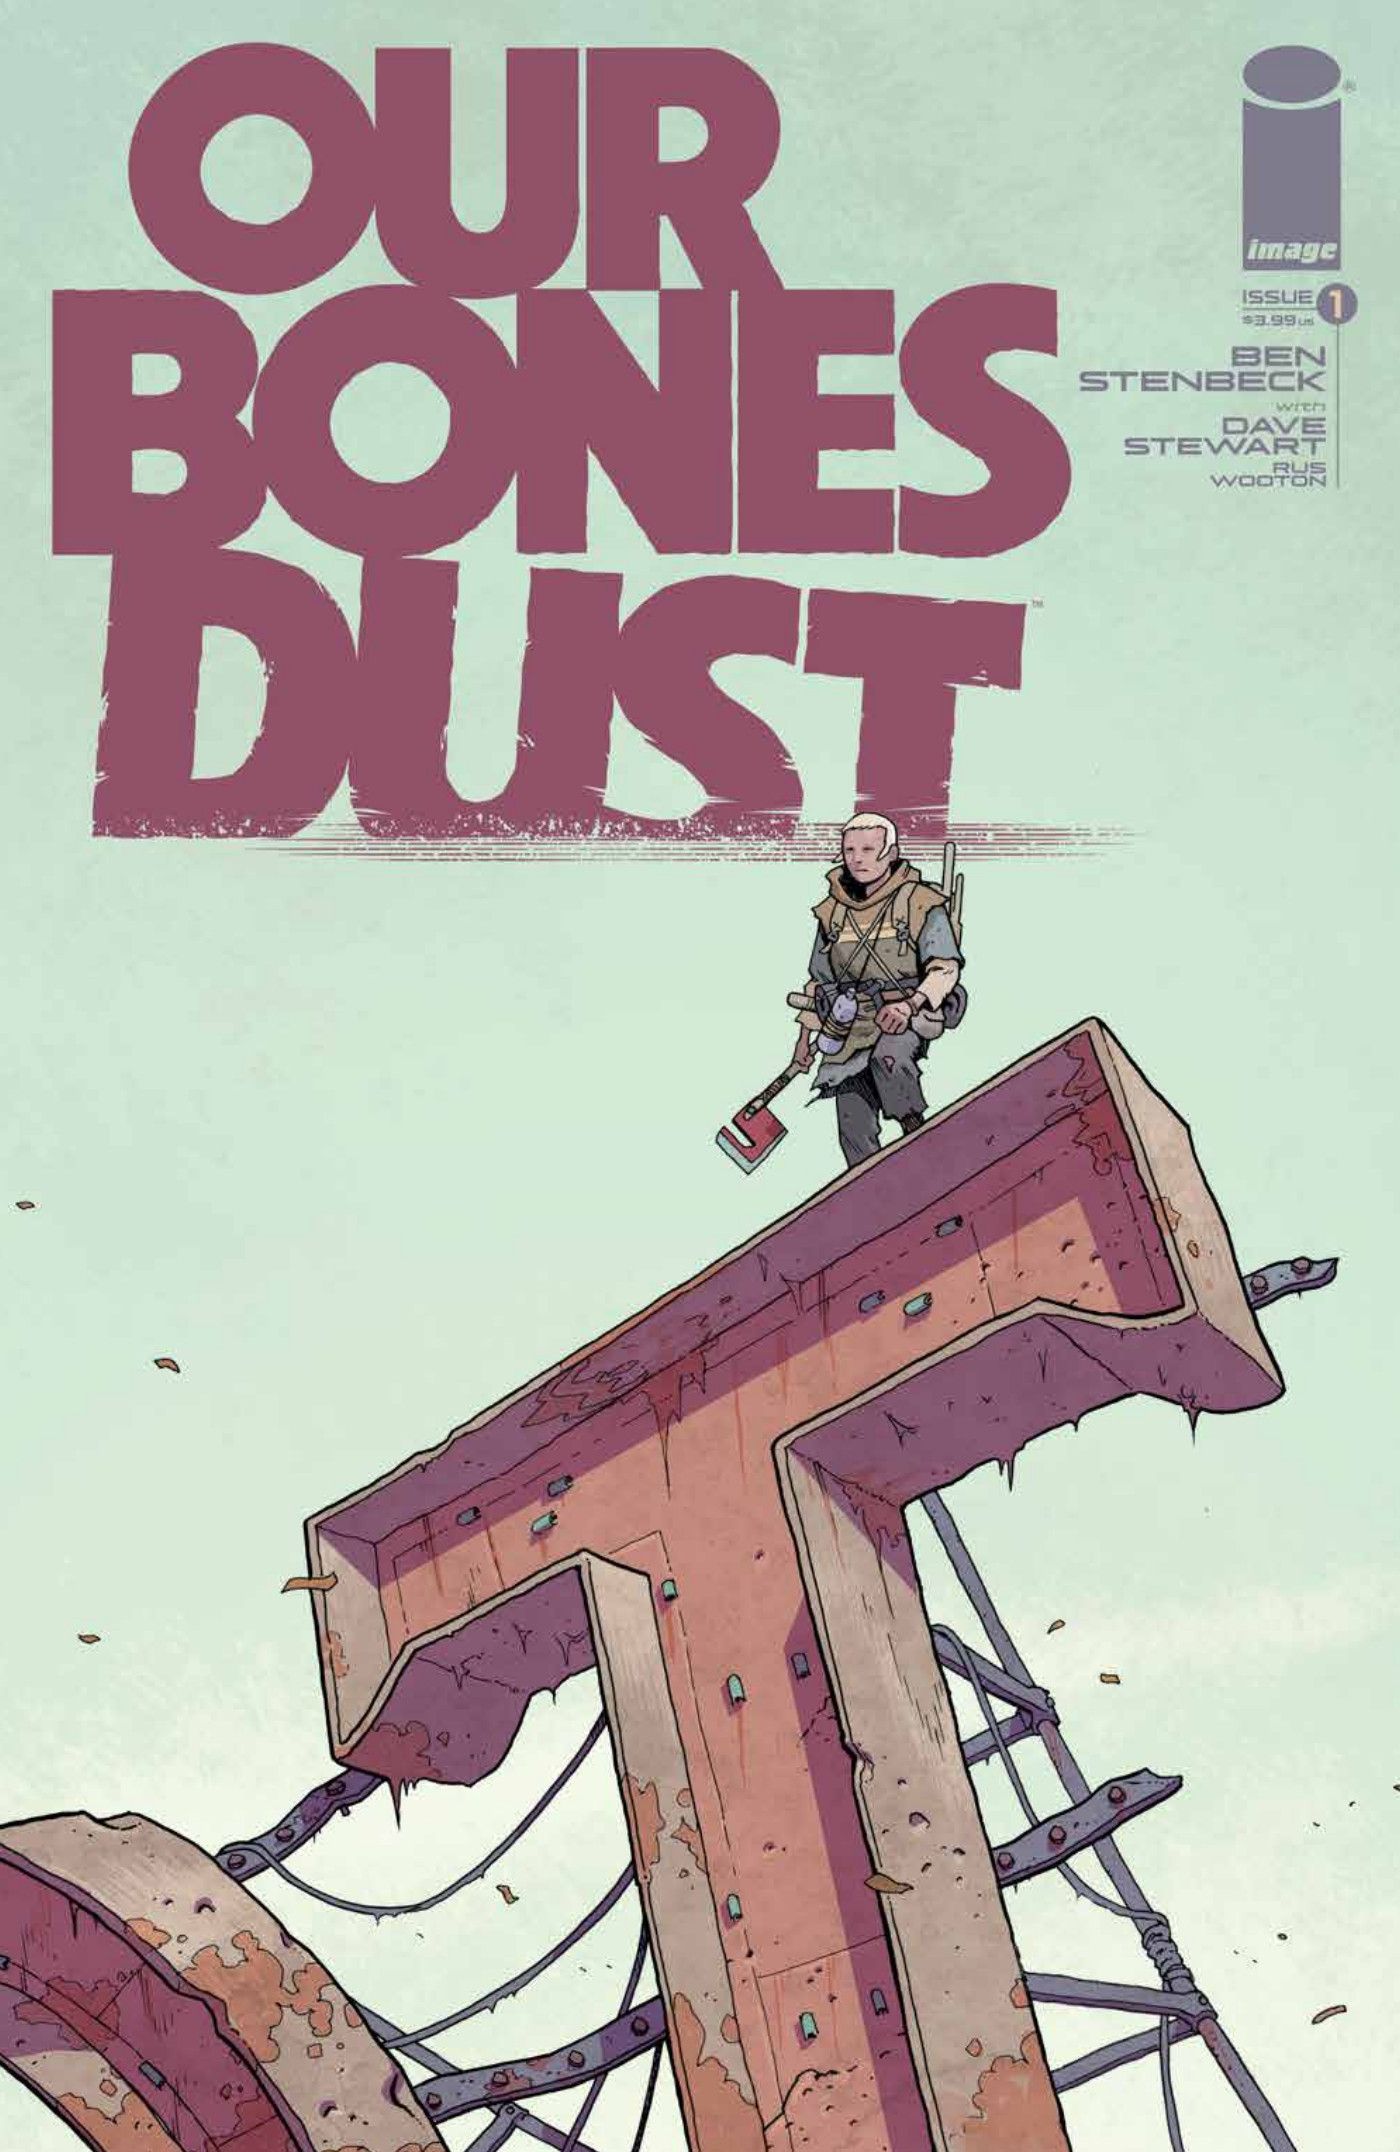 Our Bones Dust #1 ACover by Ben Stenbeck.